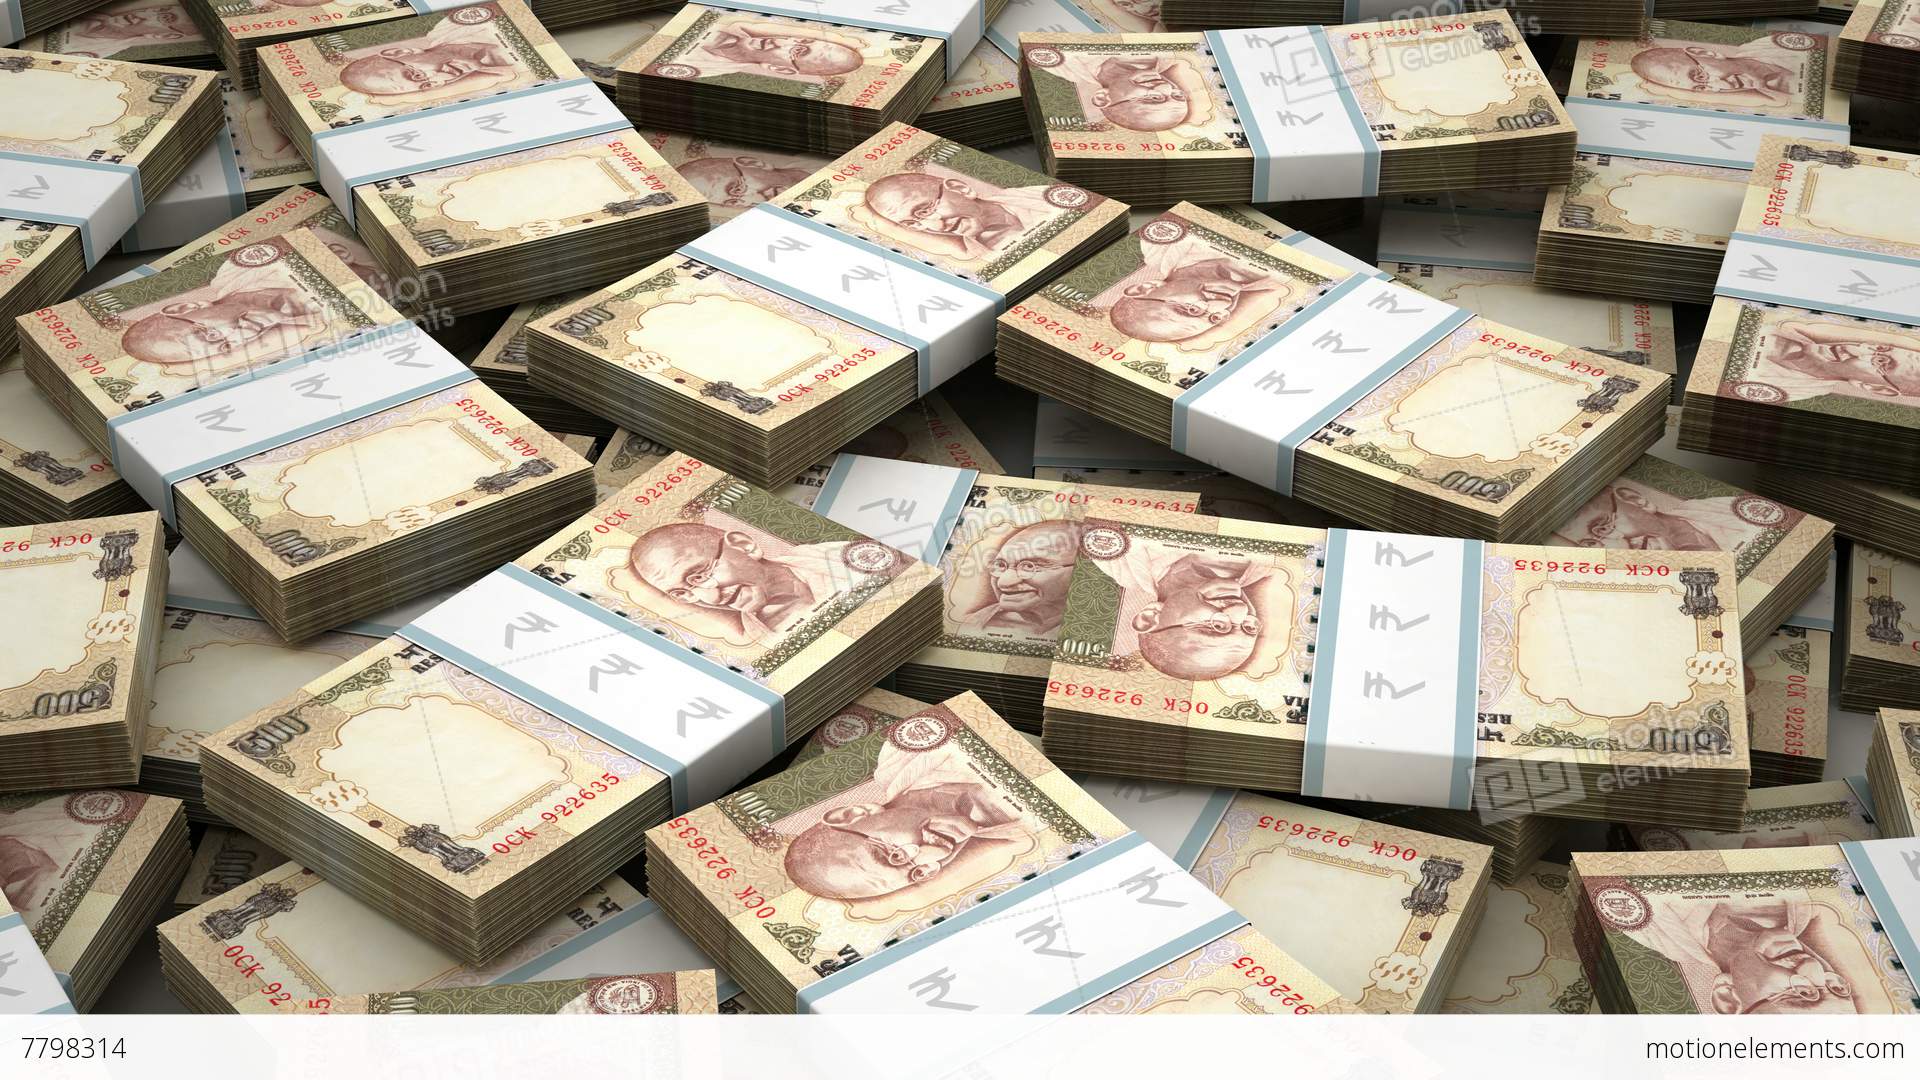 denaro indiano wallpaper hd,contanti,banconota,i soldi,collezione,carta